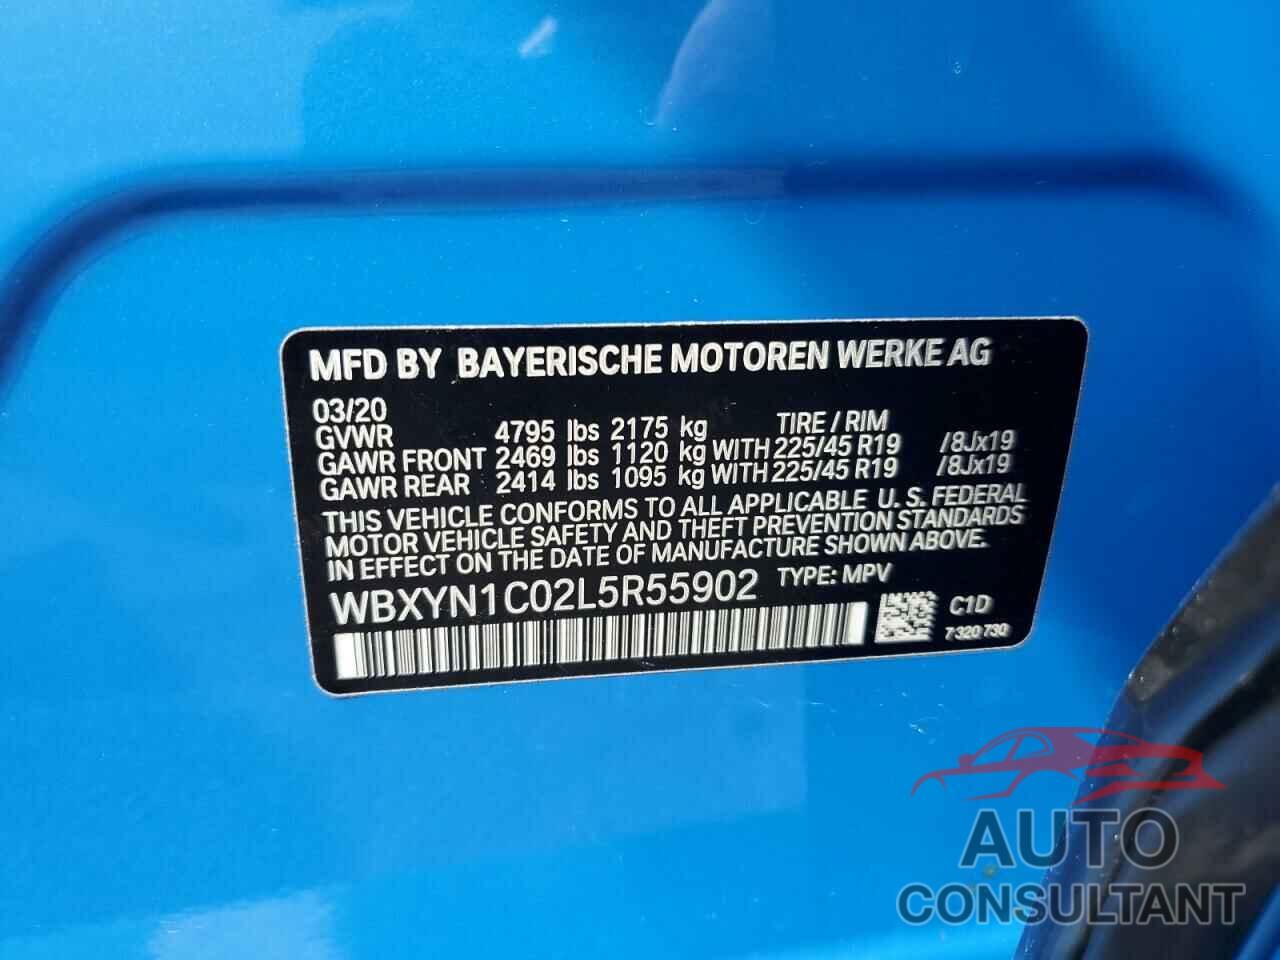 BMW X2 2020 - WBXYN1C02L5R55902